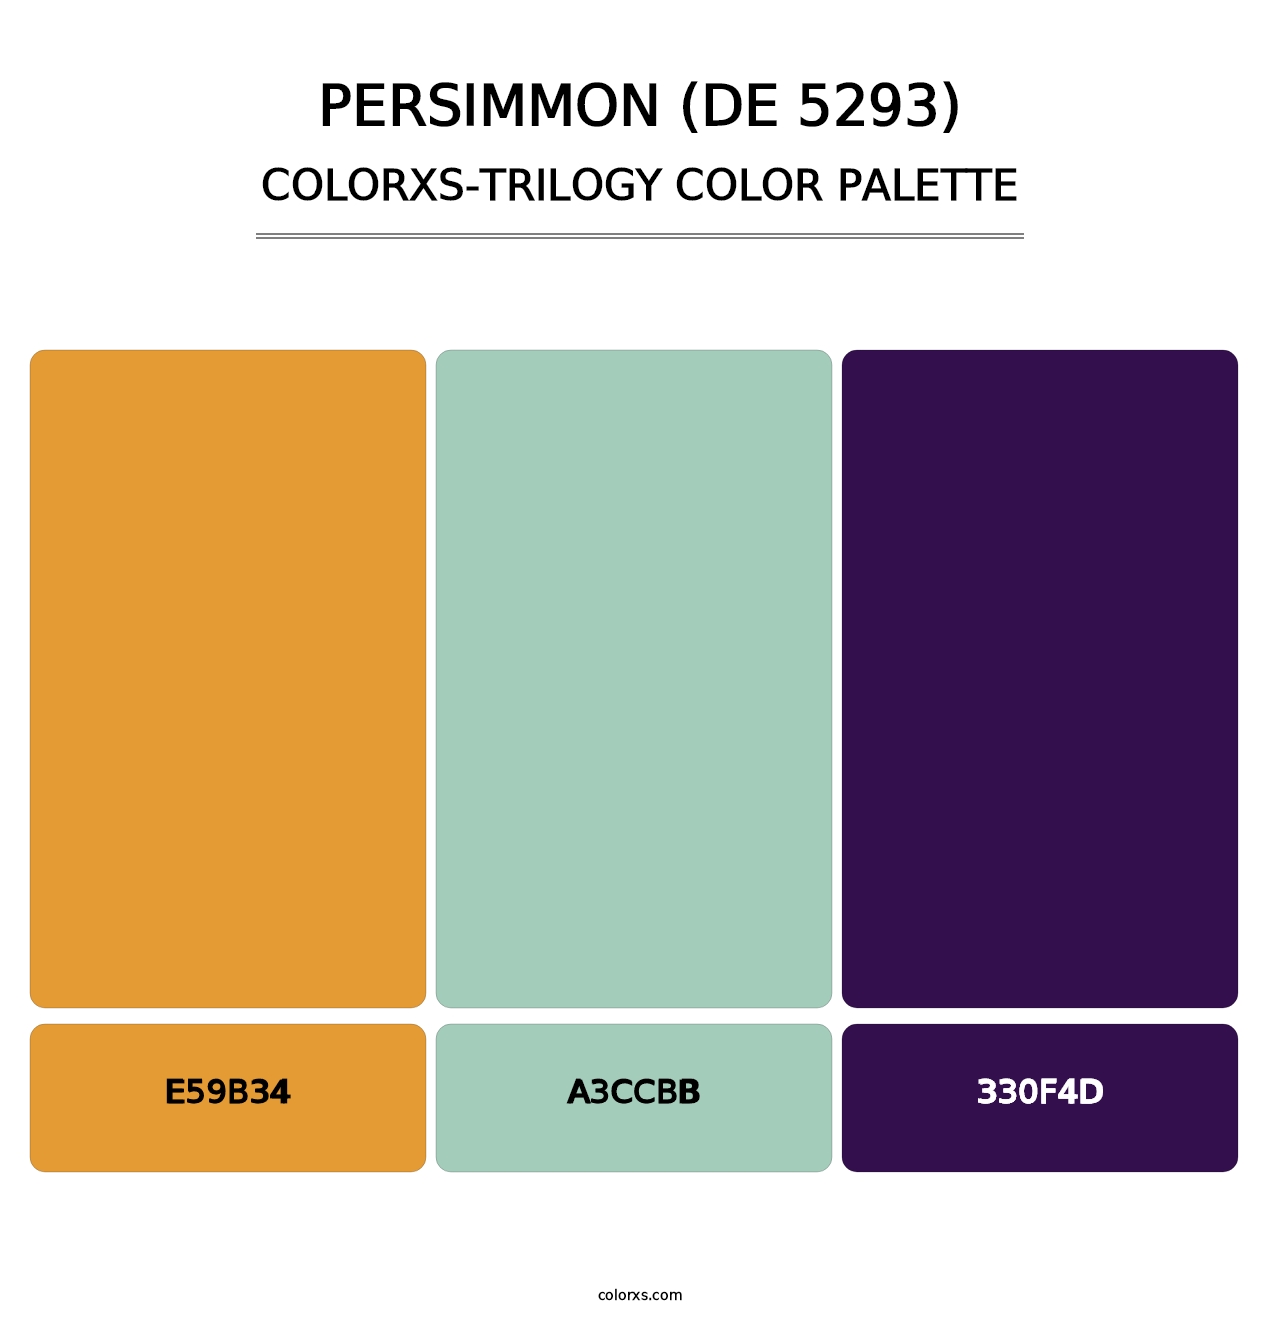 Persimmon (DE 5293) - Colorxs Trilogy Palette